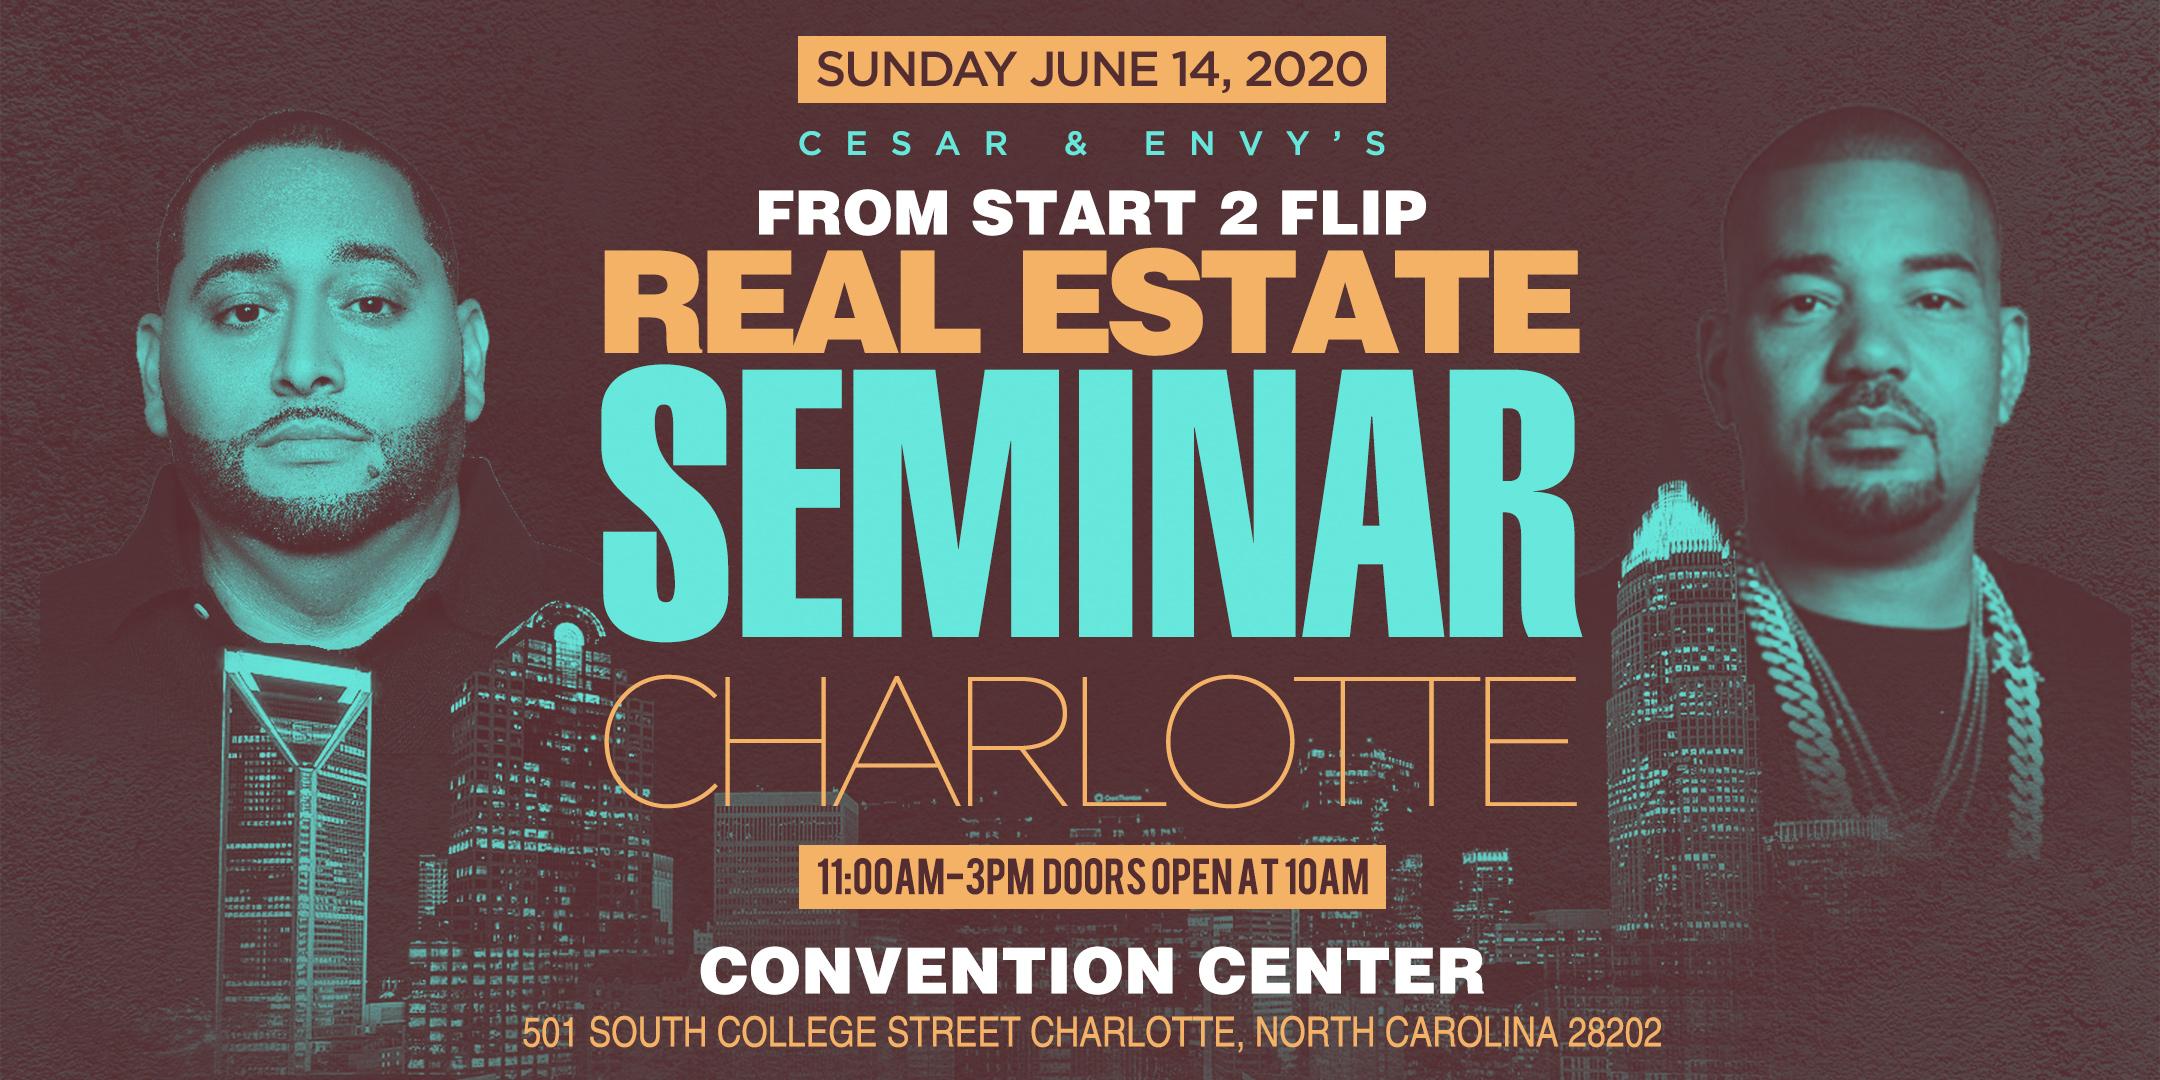 Cesar & DJ Envy's Real Estate Seminar [CHARLOTTE] 14 JUN 2020